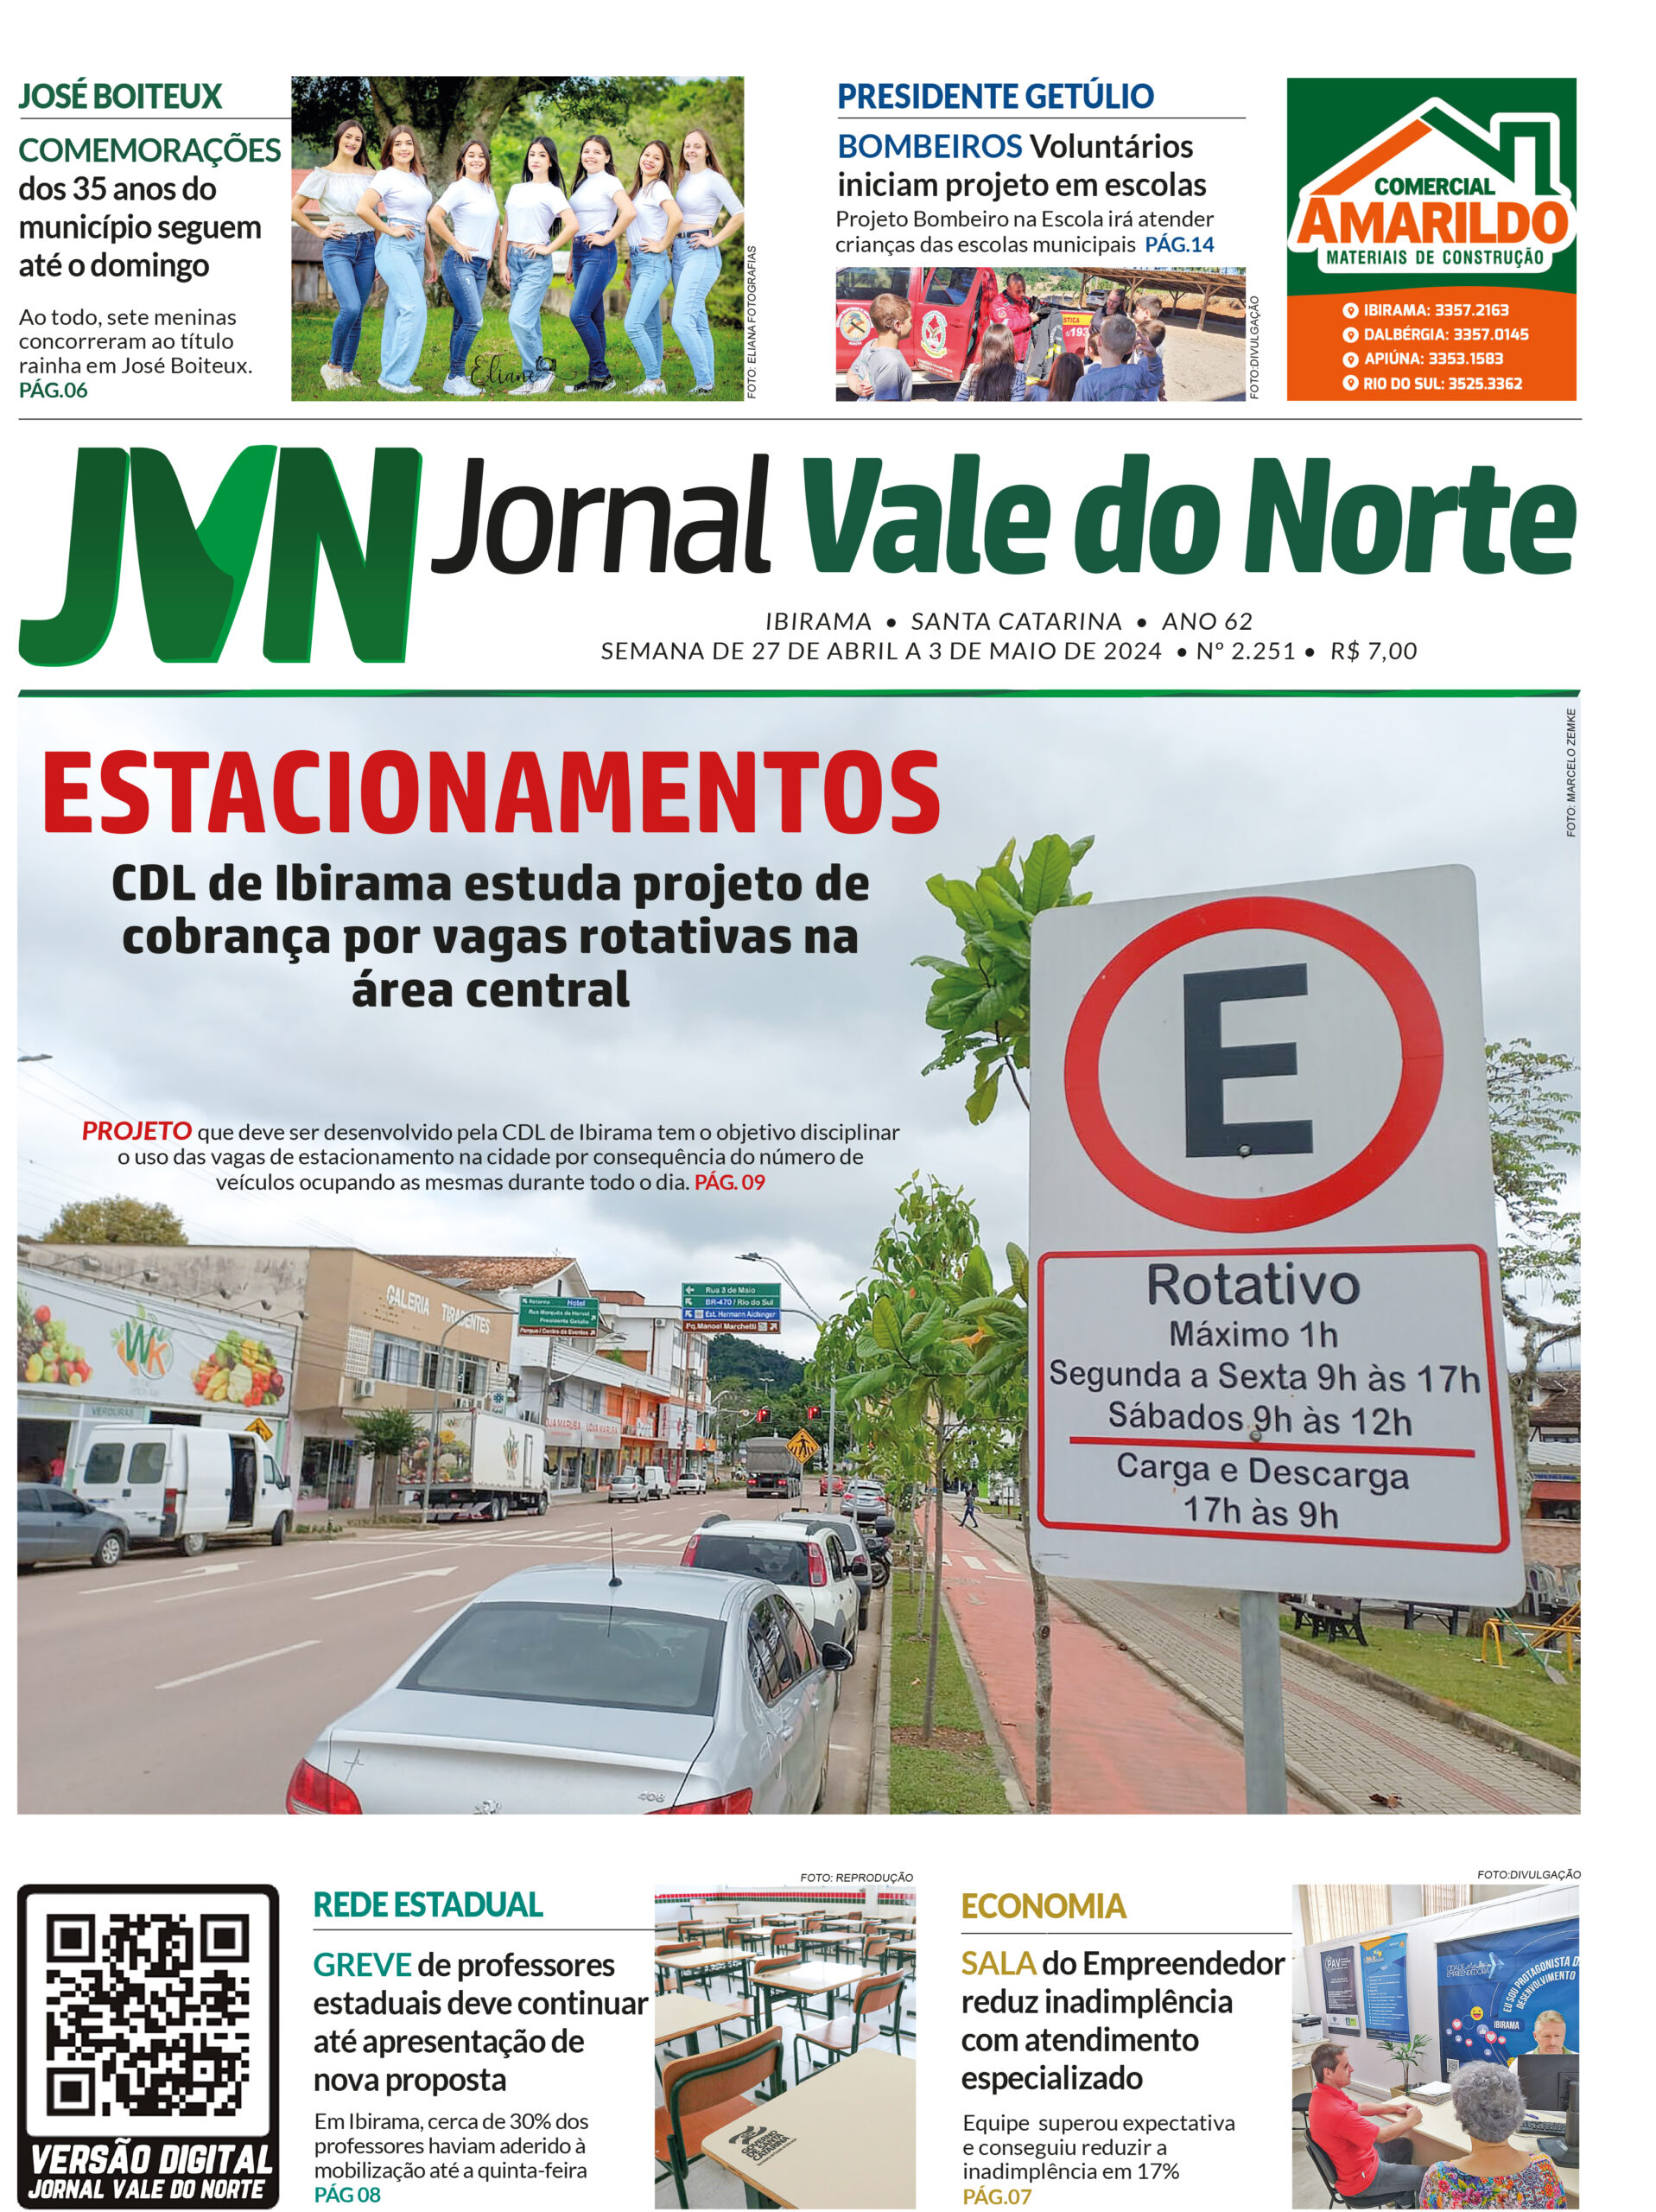 JORNAL VALE DO NORTE DE 27 DE ABRIL A 03 DE MAIO